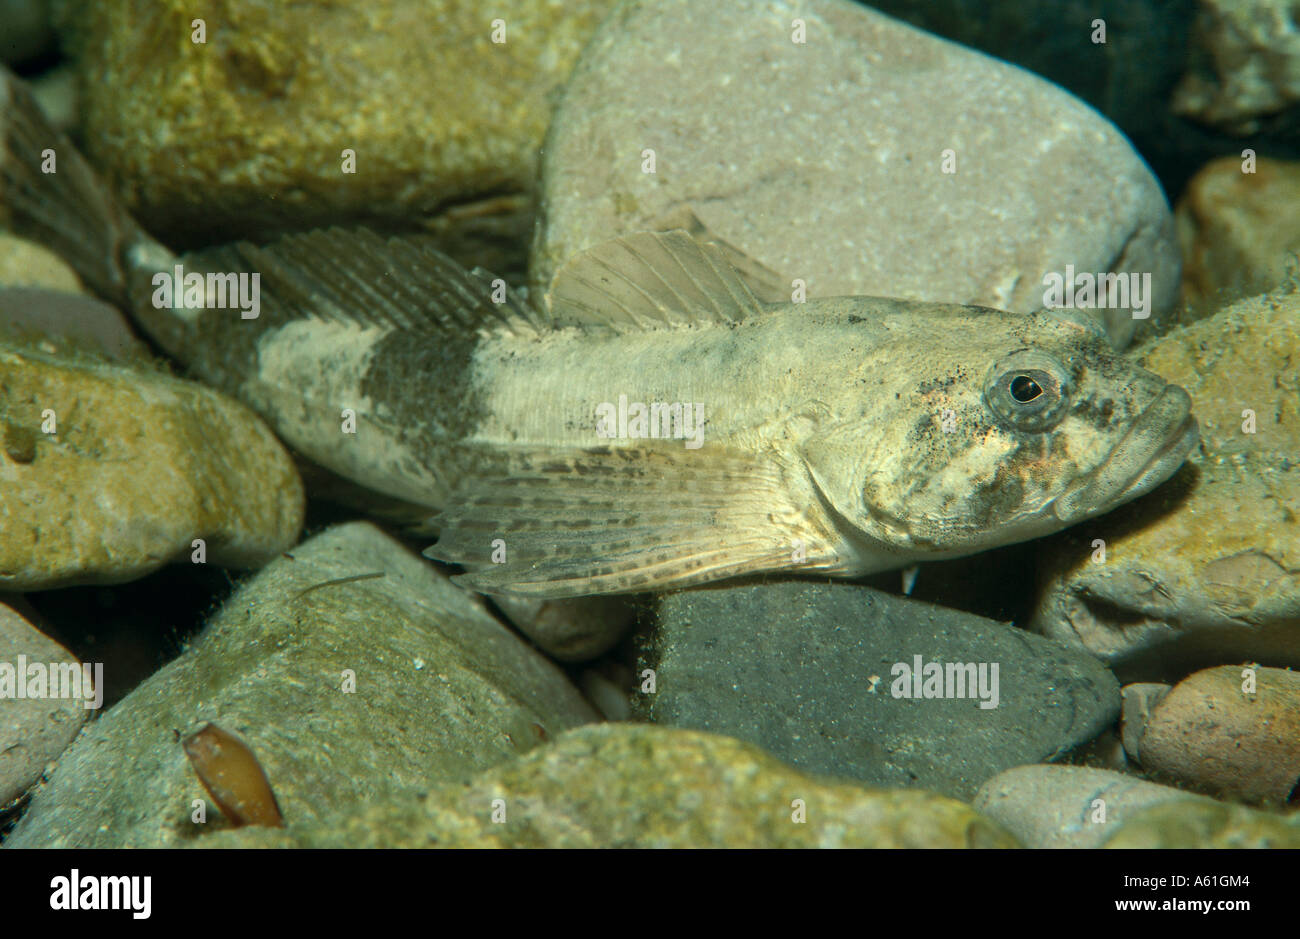 Close-up of European bullhead (Cottus gobio) fish underwater Stock Photo